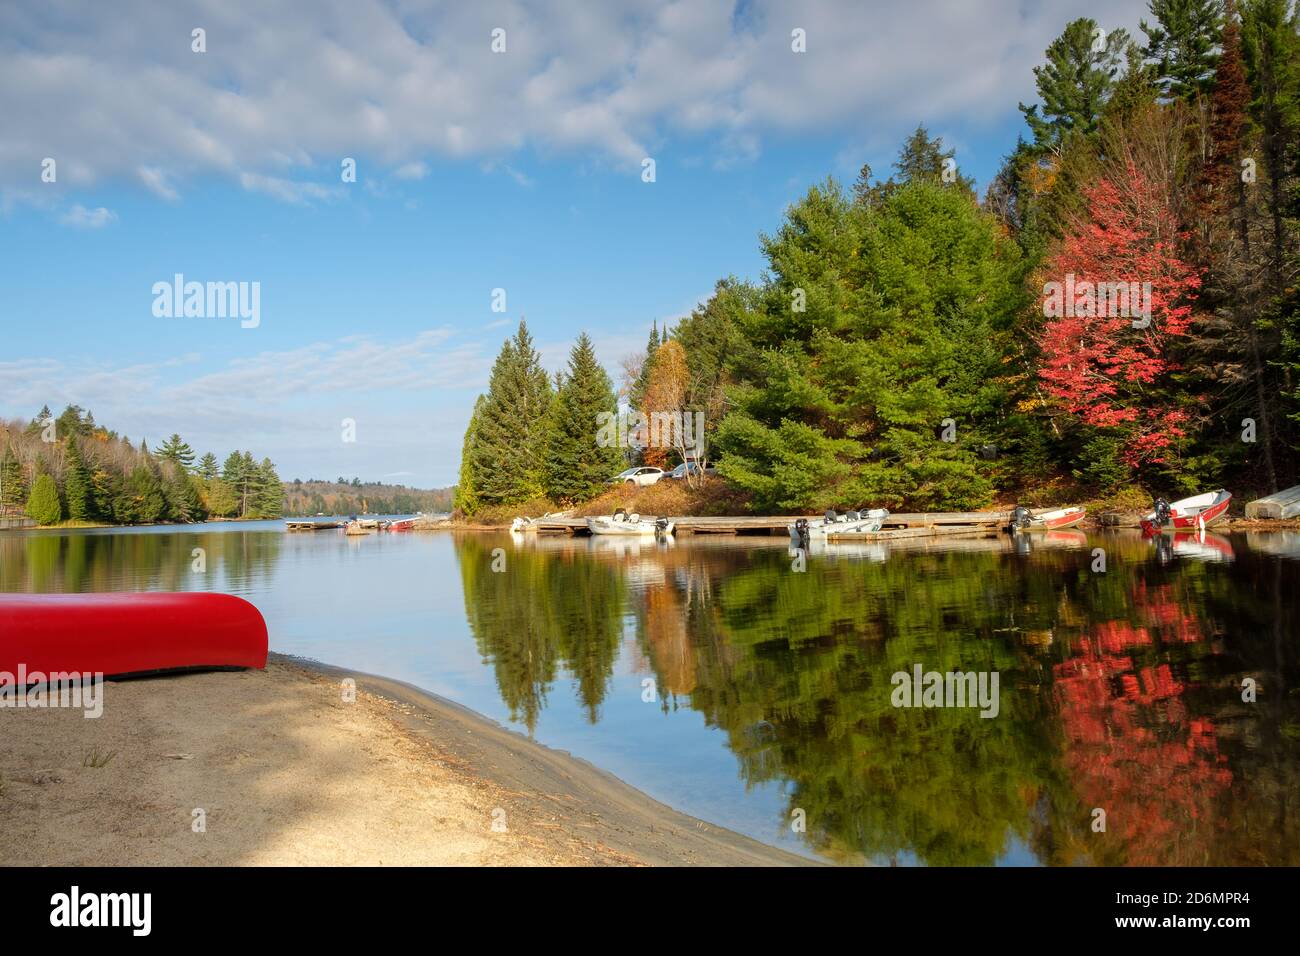 Caída en Canadá - canoas rojas y árboles reflejados en un lago Foto de stock